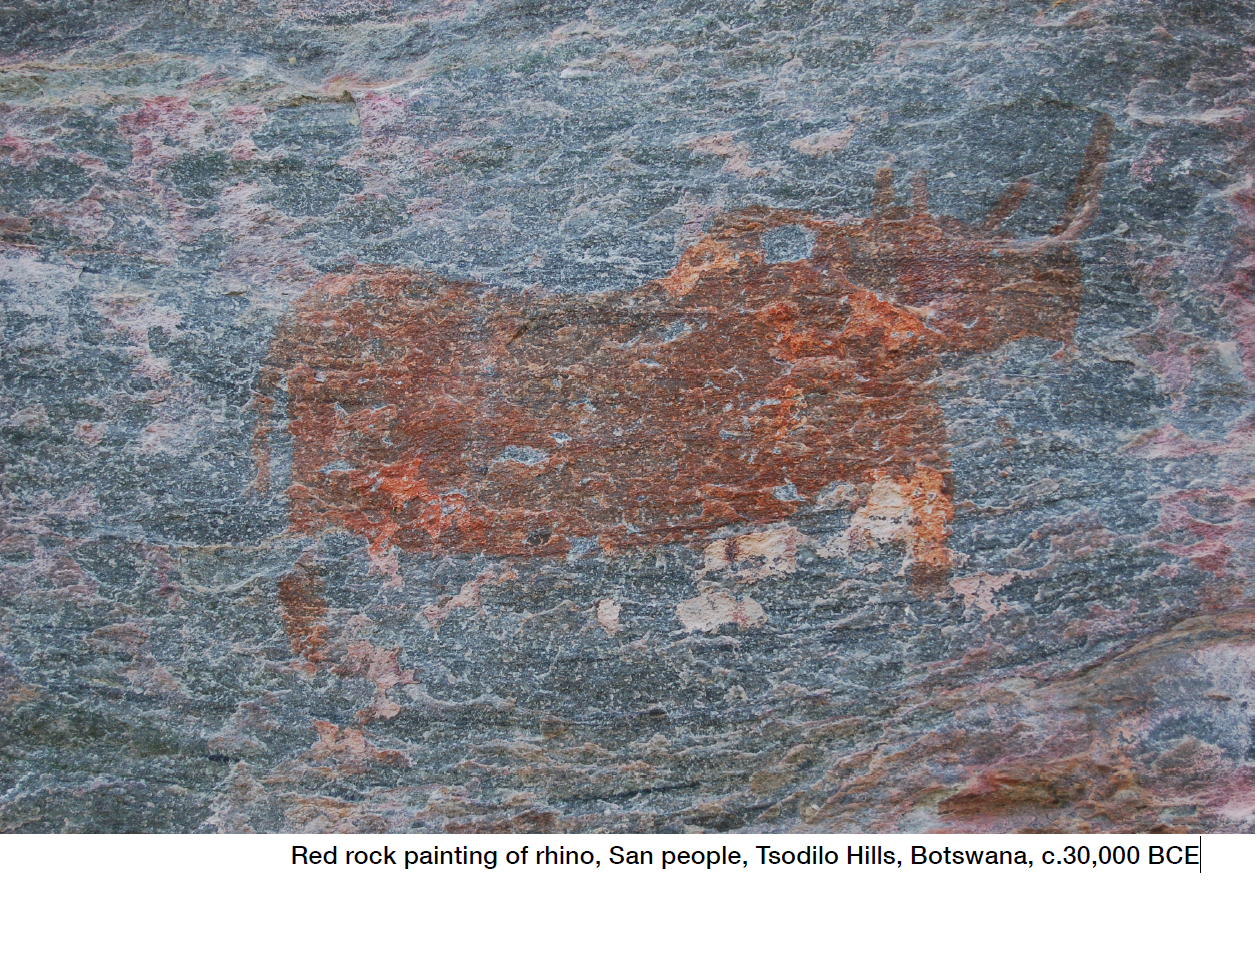 Надпись на слайде: Красное наскальное изображение носорога, народ Сан, Цодило, Ботсвана (прим. 30 000 до н. э.) 